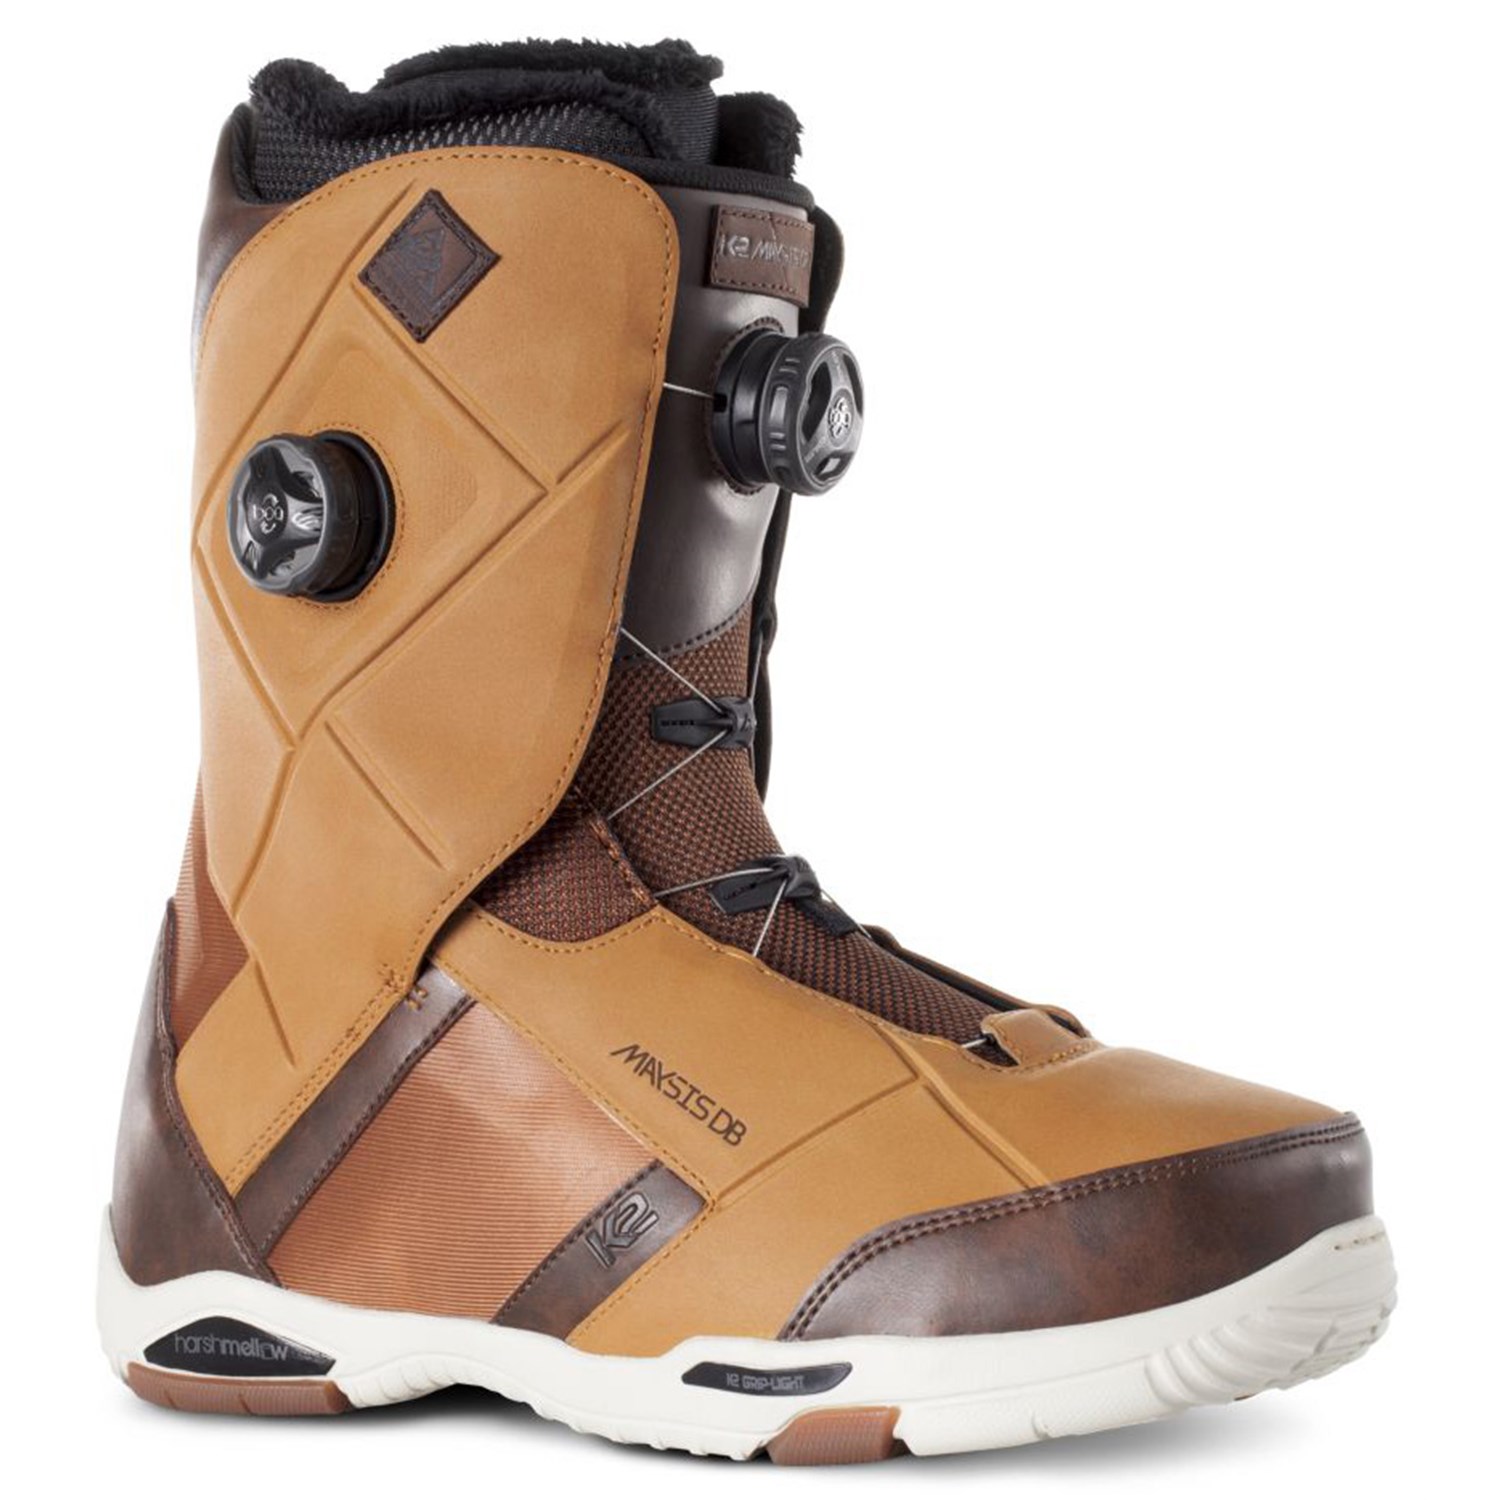 2015 K2 Maysis Snowboard boots